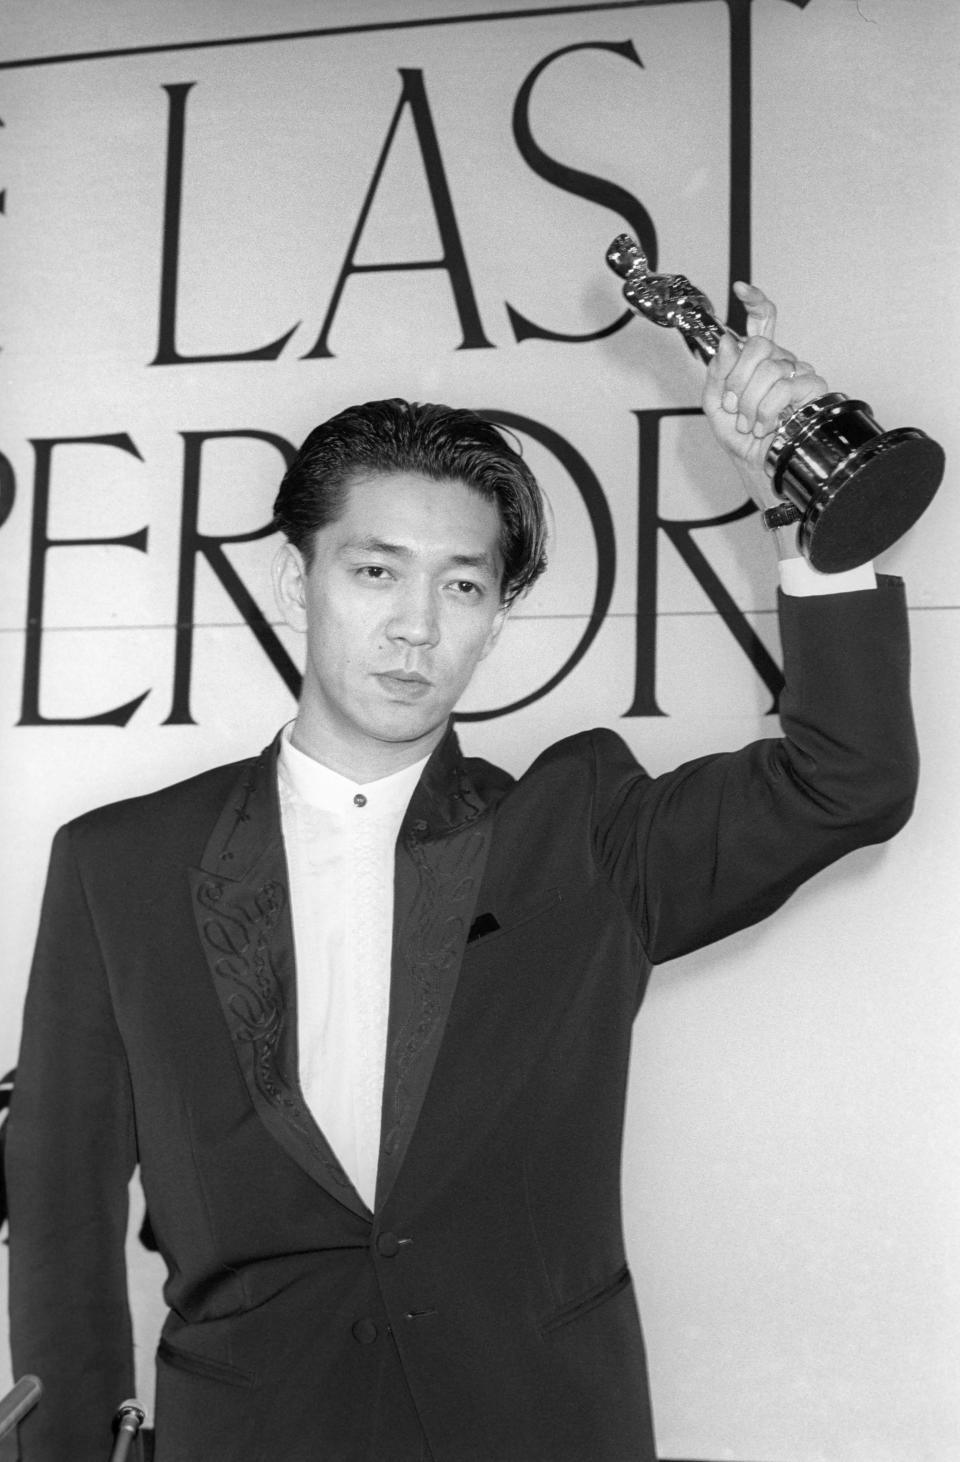 ARCHIVO - Ryuichi Sakamoto sostiene su Premio de la Academia por la música de la película "The Last Emperor" en Tokio, en abril de 1988. La empresa discográfica japonesa Avex dijo que Sakamoto, quien hizo la música de películas como "The Last Emperor" y "The Revenant", ha muerto. Tenía 71 años. Falleció el 28 de marzo de acuerdo con un comunicado enviado el 2 de abril de 2023. (Kyodo News vía AP)